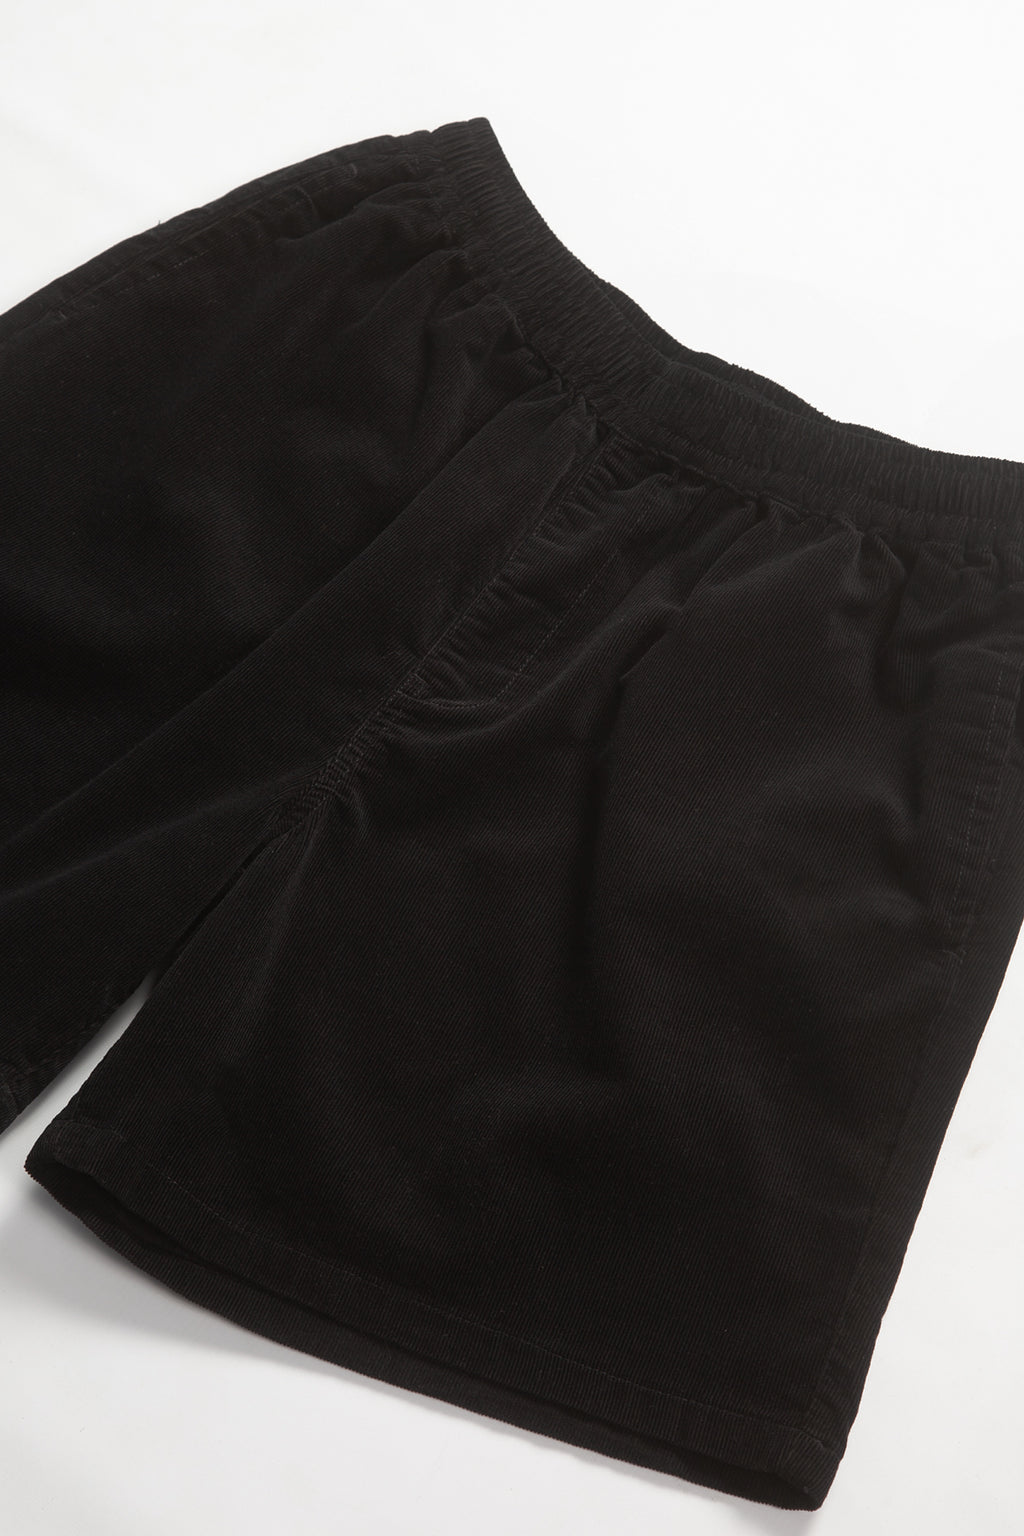 Blacksmith - Corduroy Easy Shorts - Black